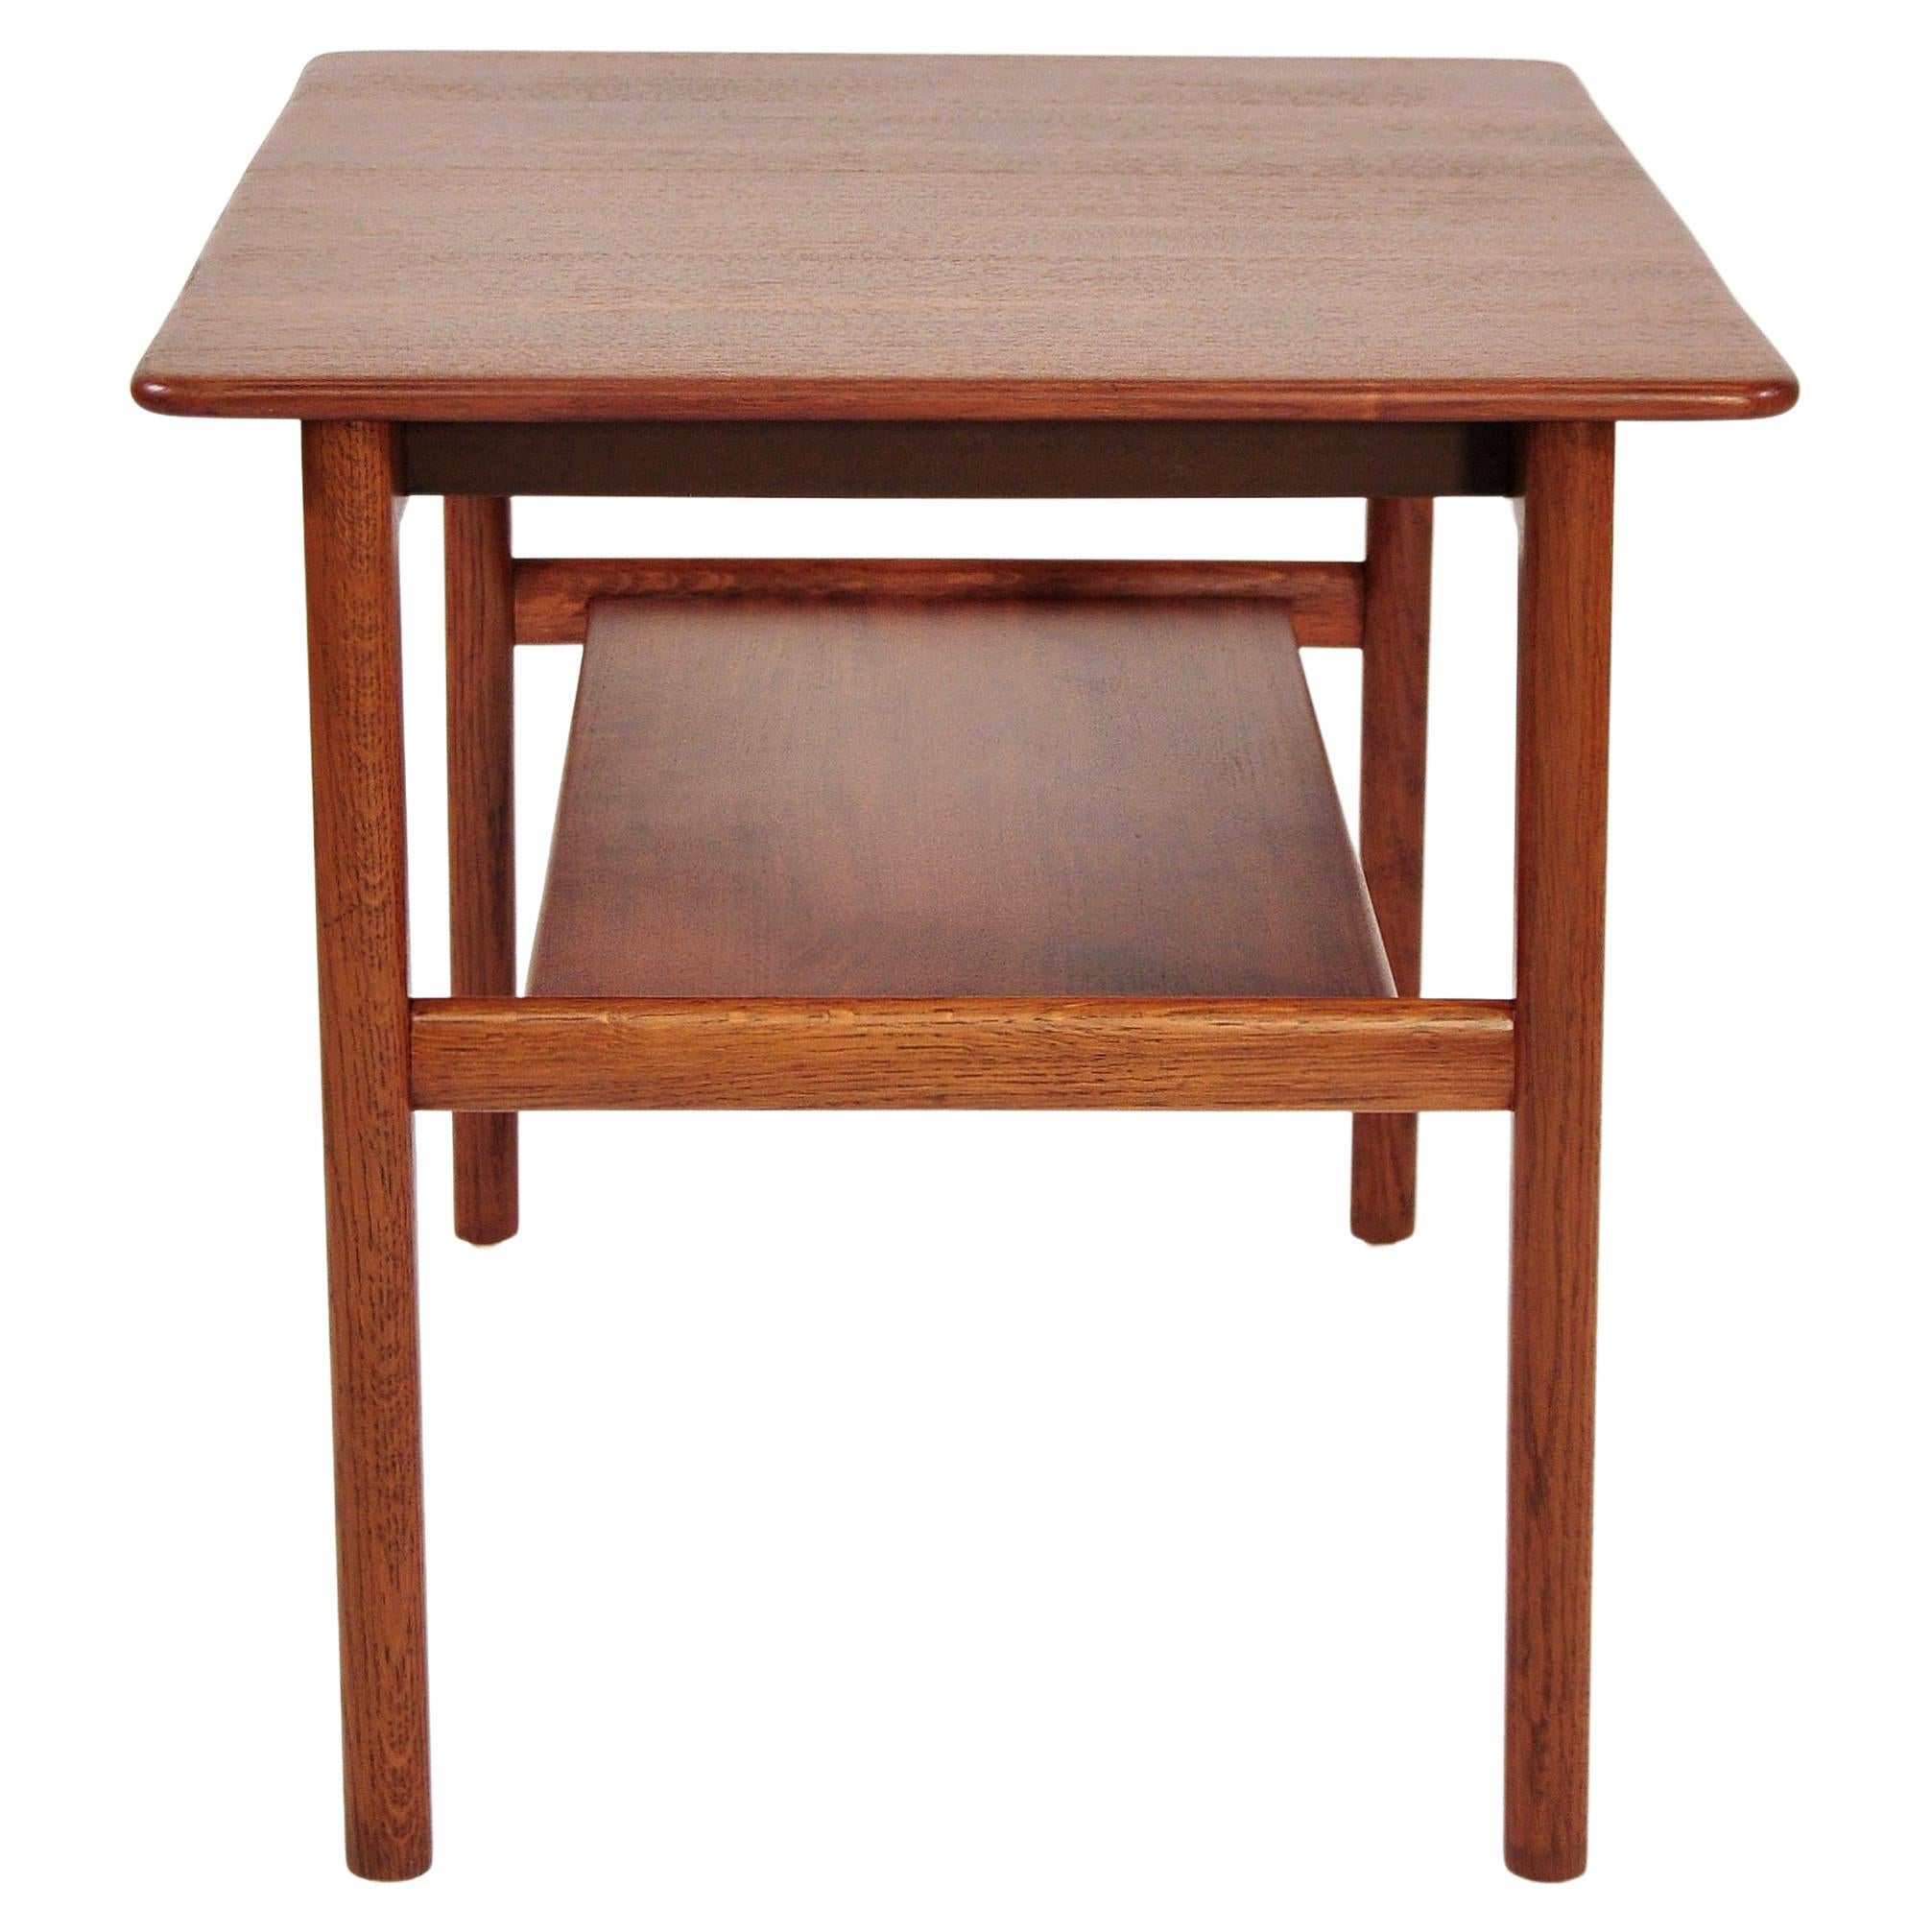 Hans Wegner Teak Table with Hidden Tray, Johannes Hansen, 1960s For Sale 2